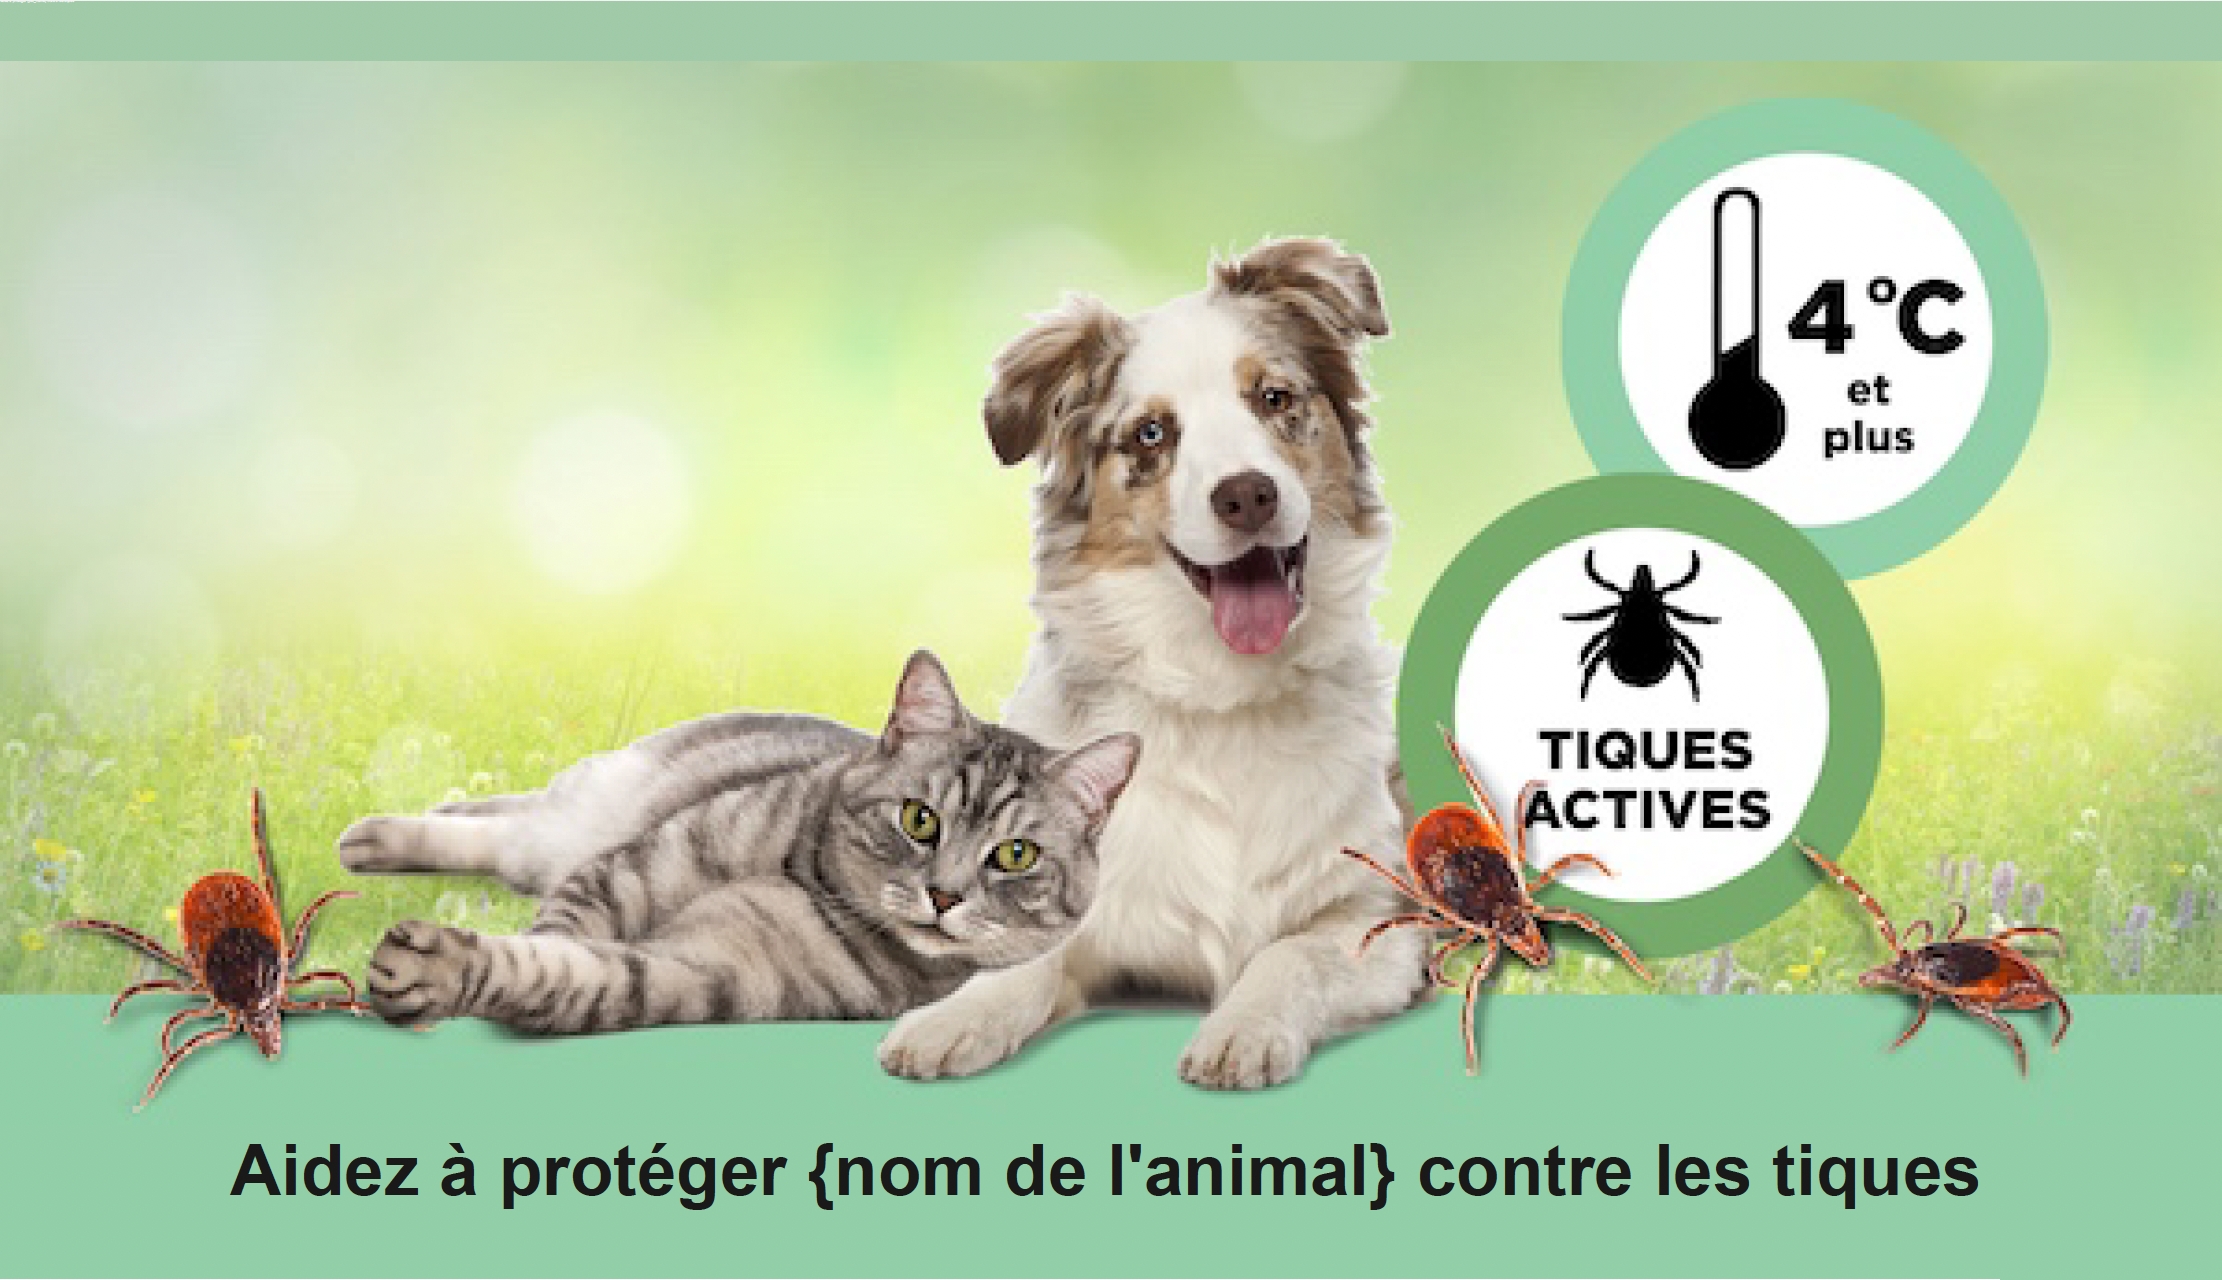 Chien et chat allongés ensemble avec des tiques et autres informations, avec un texte "Aidez à protéger {nom de l'animal} contre les tiques.